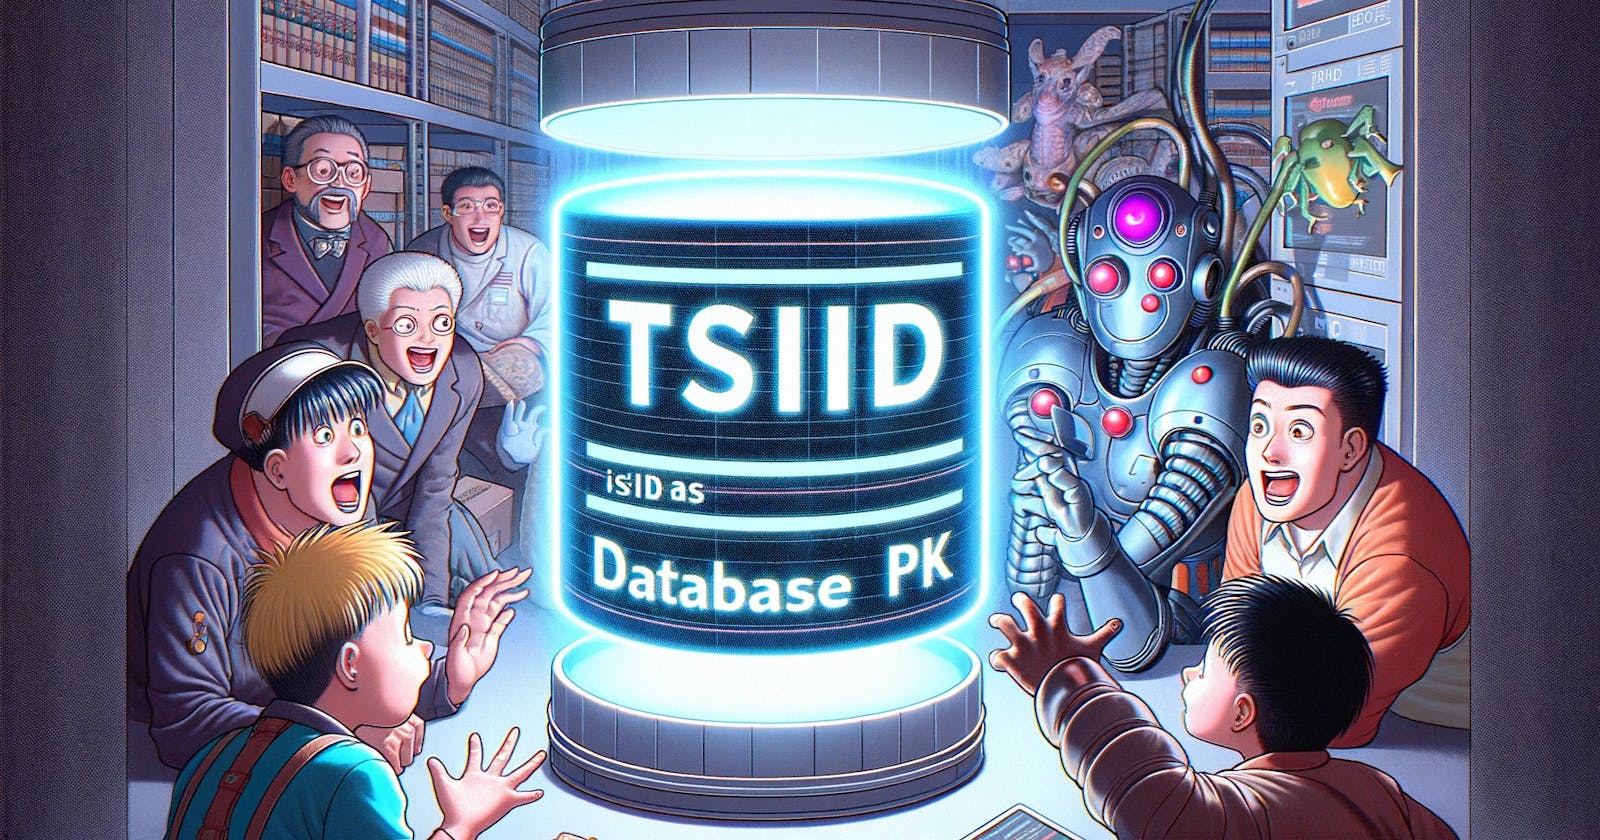 Using TSID as Database PK